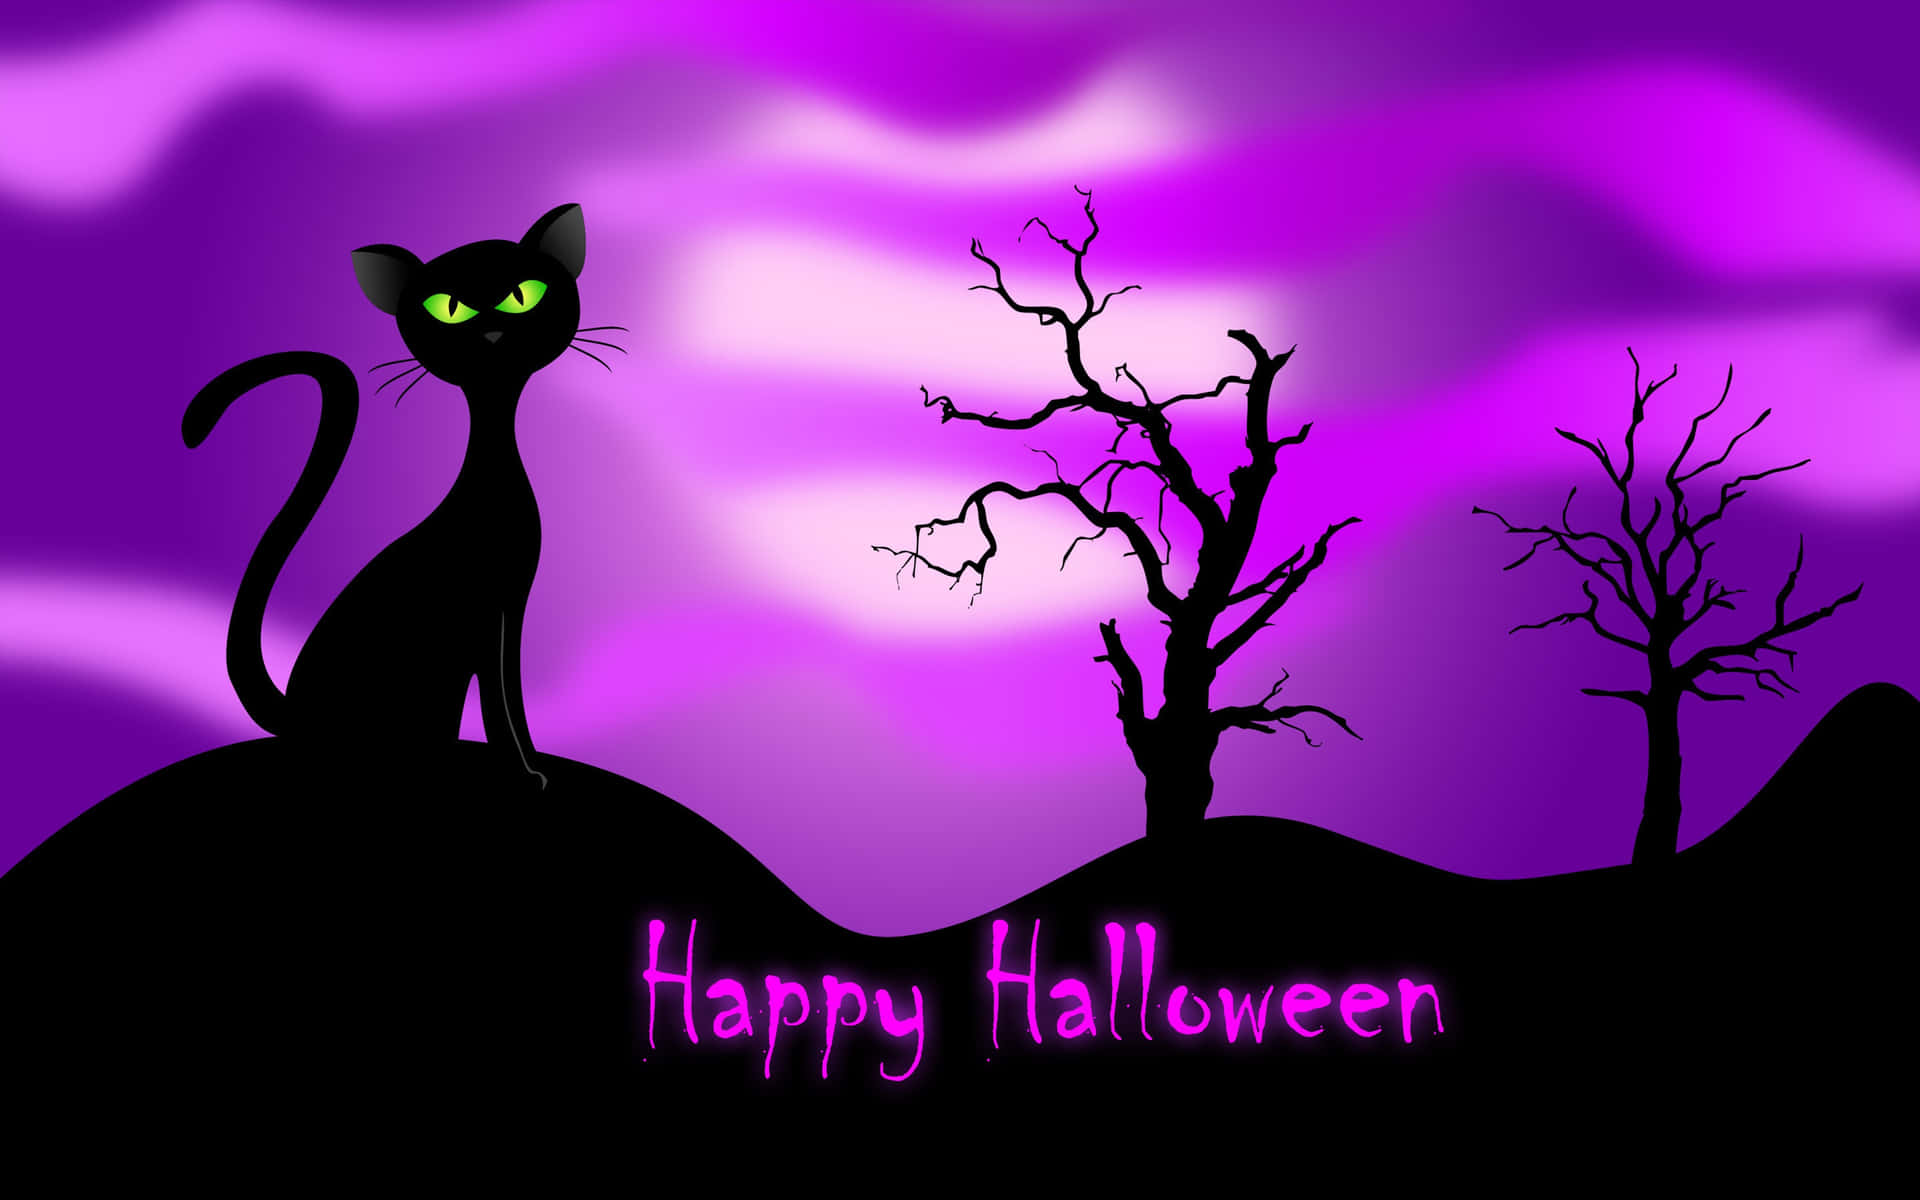 Trick eller treatning er ikke kun for børn! Vis din spøgelse side denne Halloween med en profilbillede.